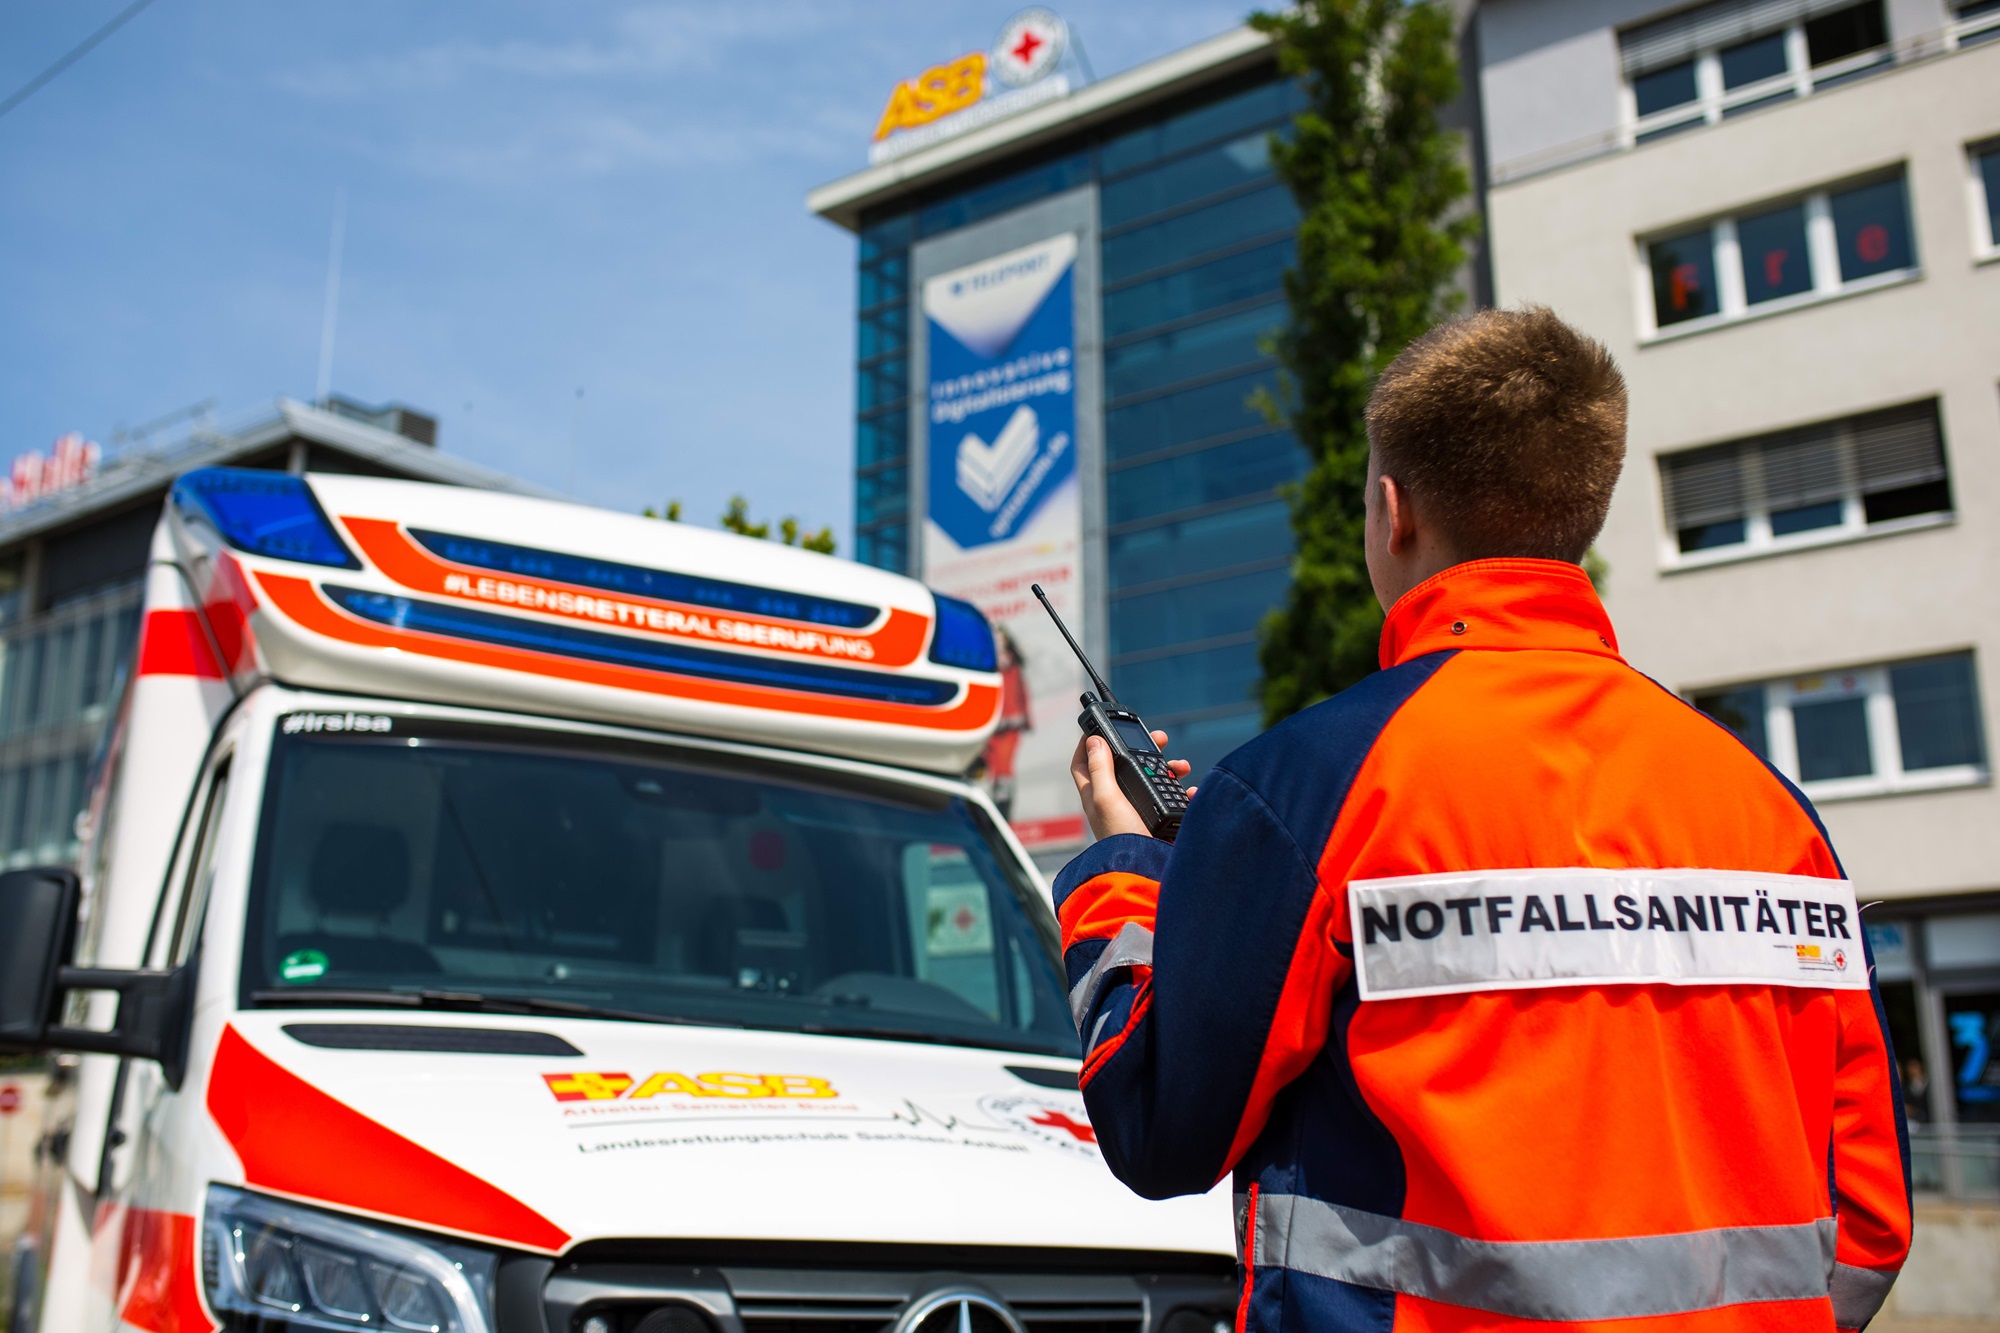 10 Jahre Notfallsanitäter in Sachsen-Anhalt bedeutet Fortschritt im Rettungsdienst